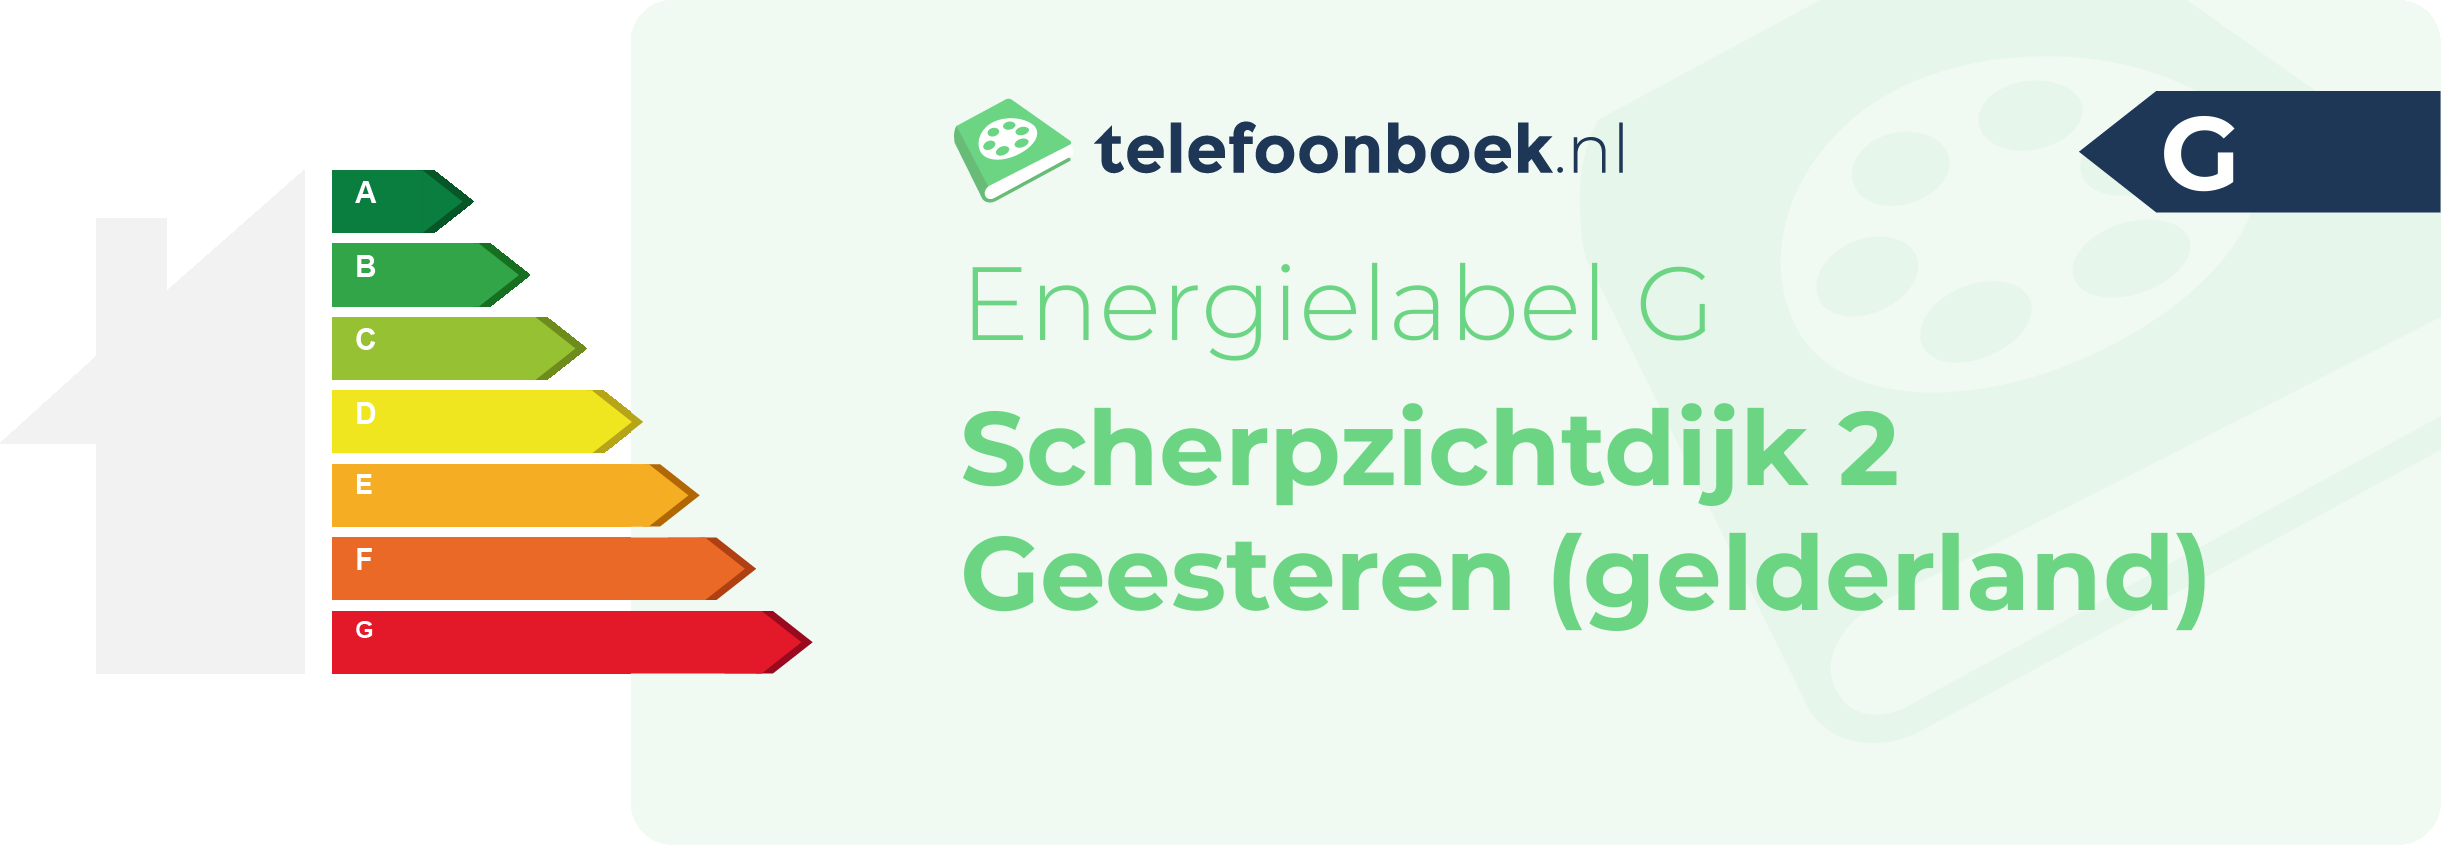 Energielabel Scherpzichtdijk 2 Geesteren (Gelderland)